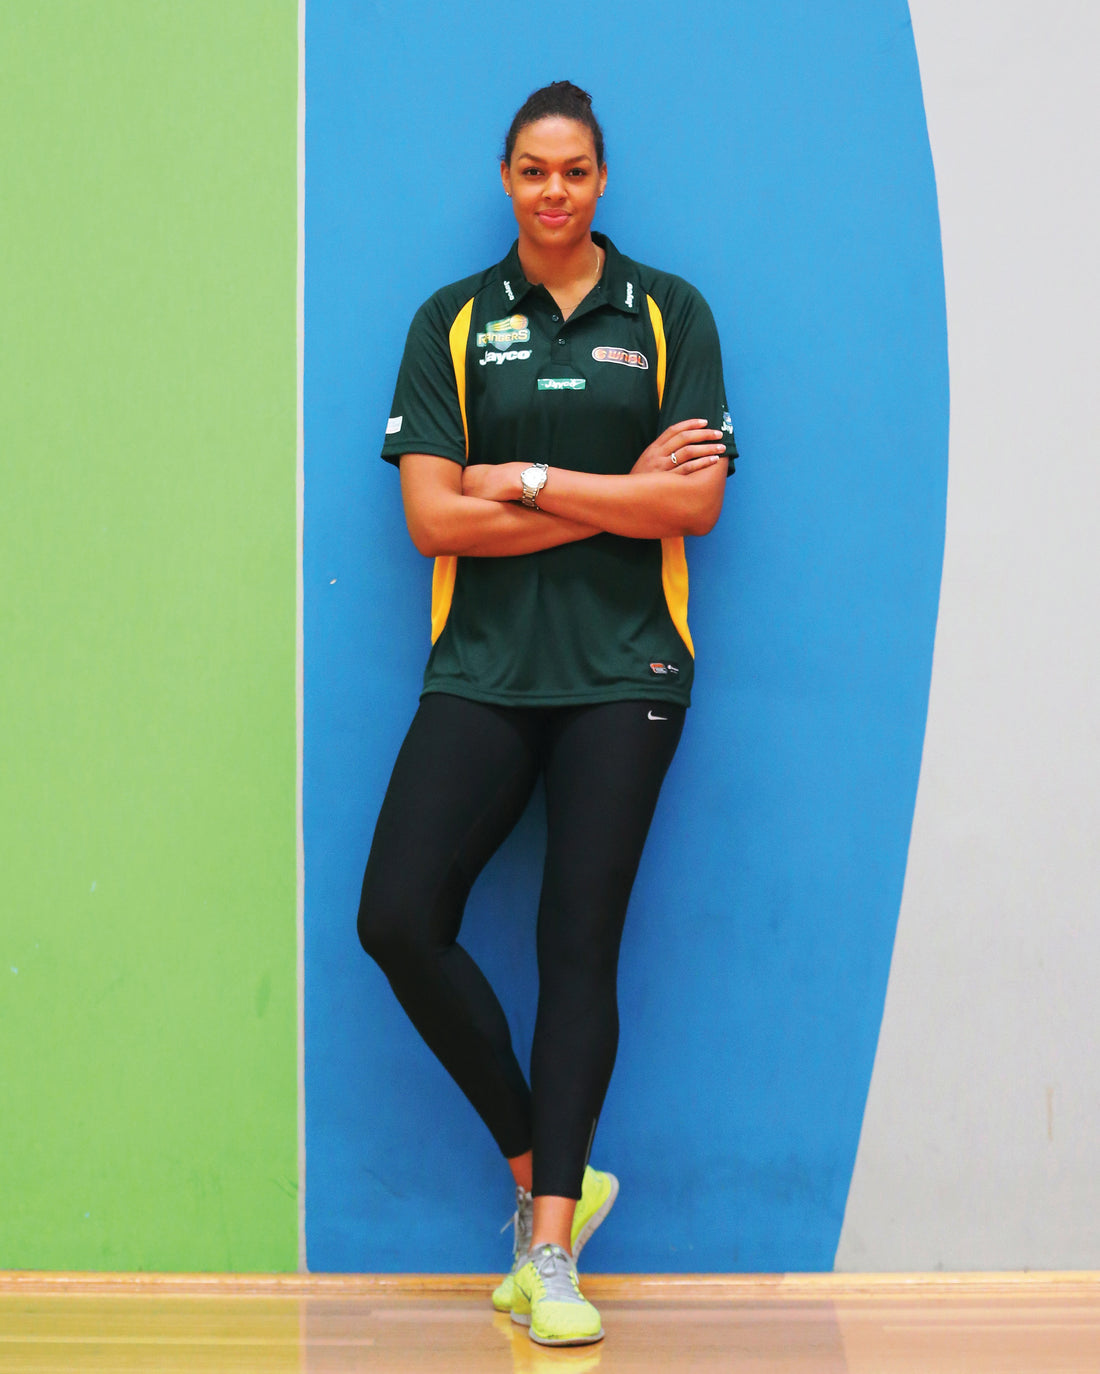 Tallest living female in Australia